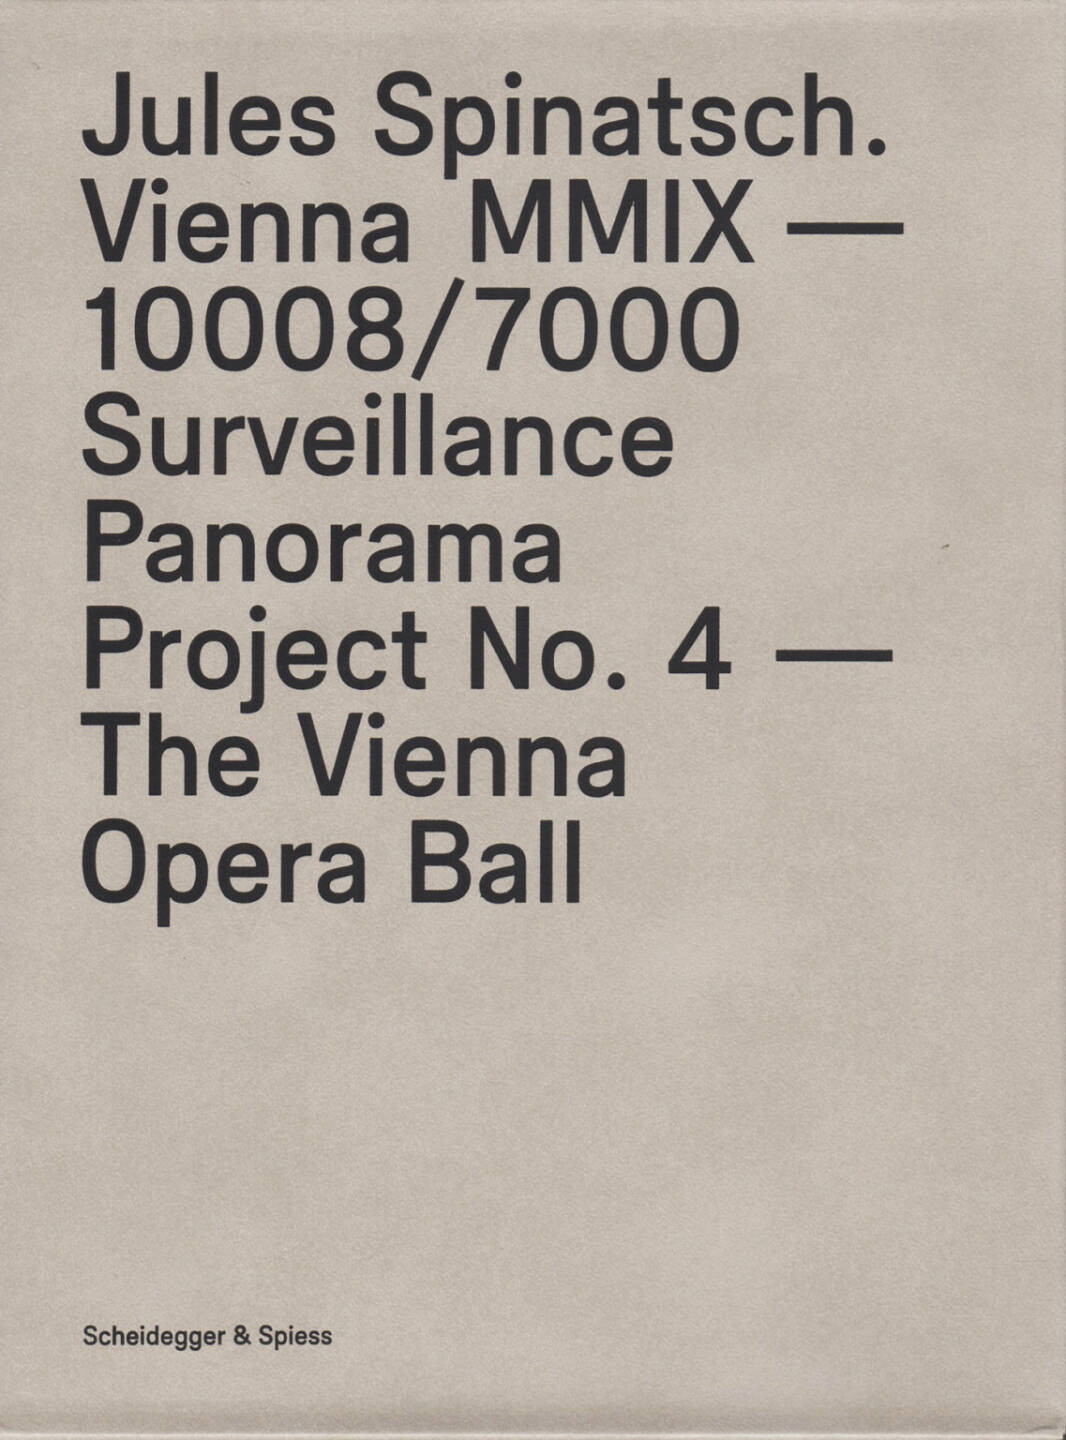 Jules Spinatsch - Vienna MMIX - 10008/7000: Surveillance Panorama Project No. 4 - The Vienna Opera Ball, Scheidegger & Spiess 2014, Cover - http://josefchladek.com/book/jules_spinatsch_-_vienna_mmix_-_100087000_surveillance_panorama_project_no_4_-_the_vienna_opera_bal